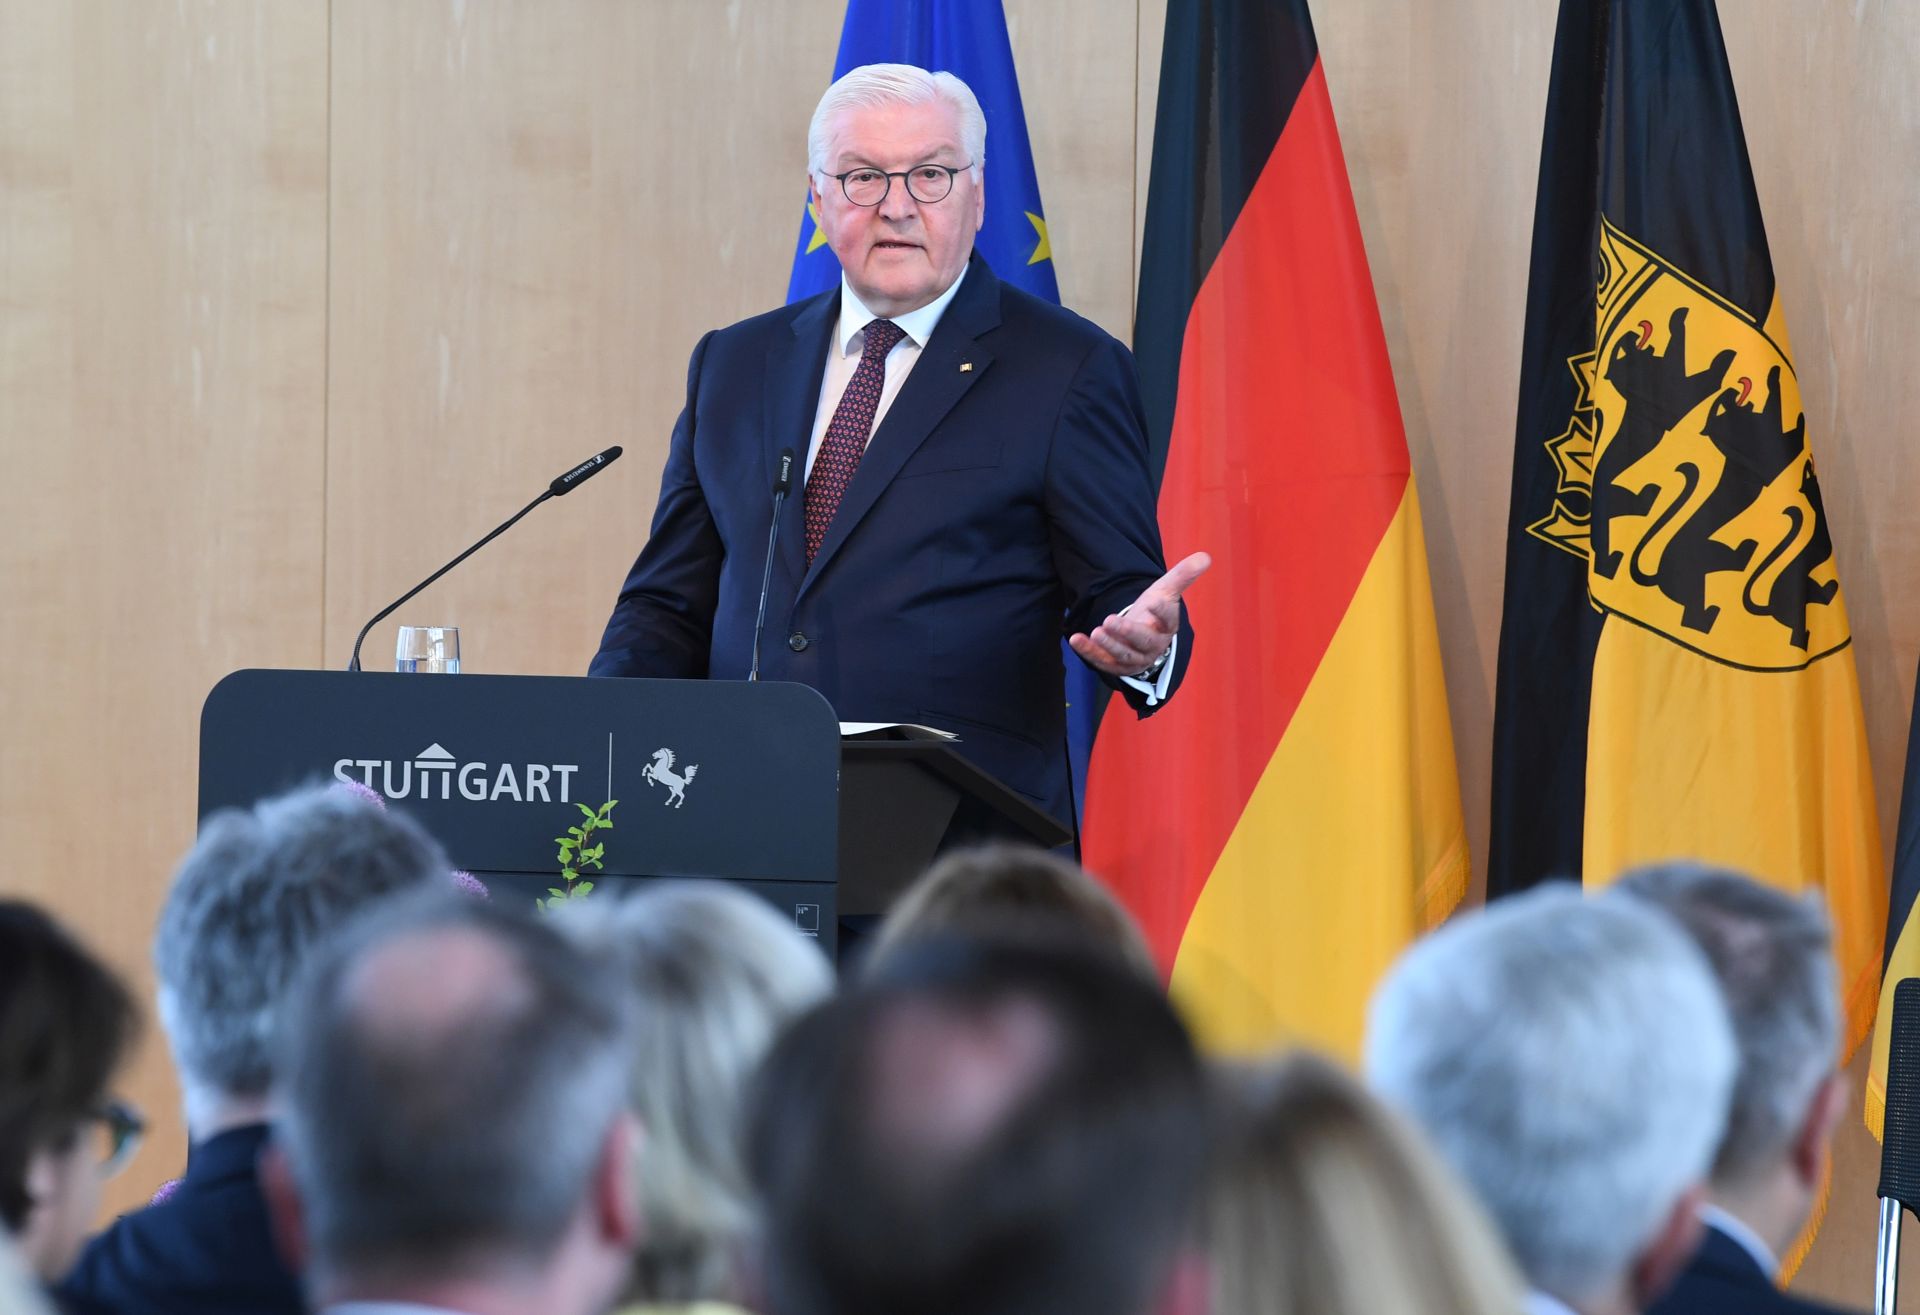 Bundespräsident Frank-Walter Steinmeier spricht im Rathaus Stuttgart.